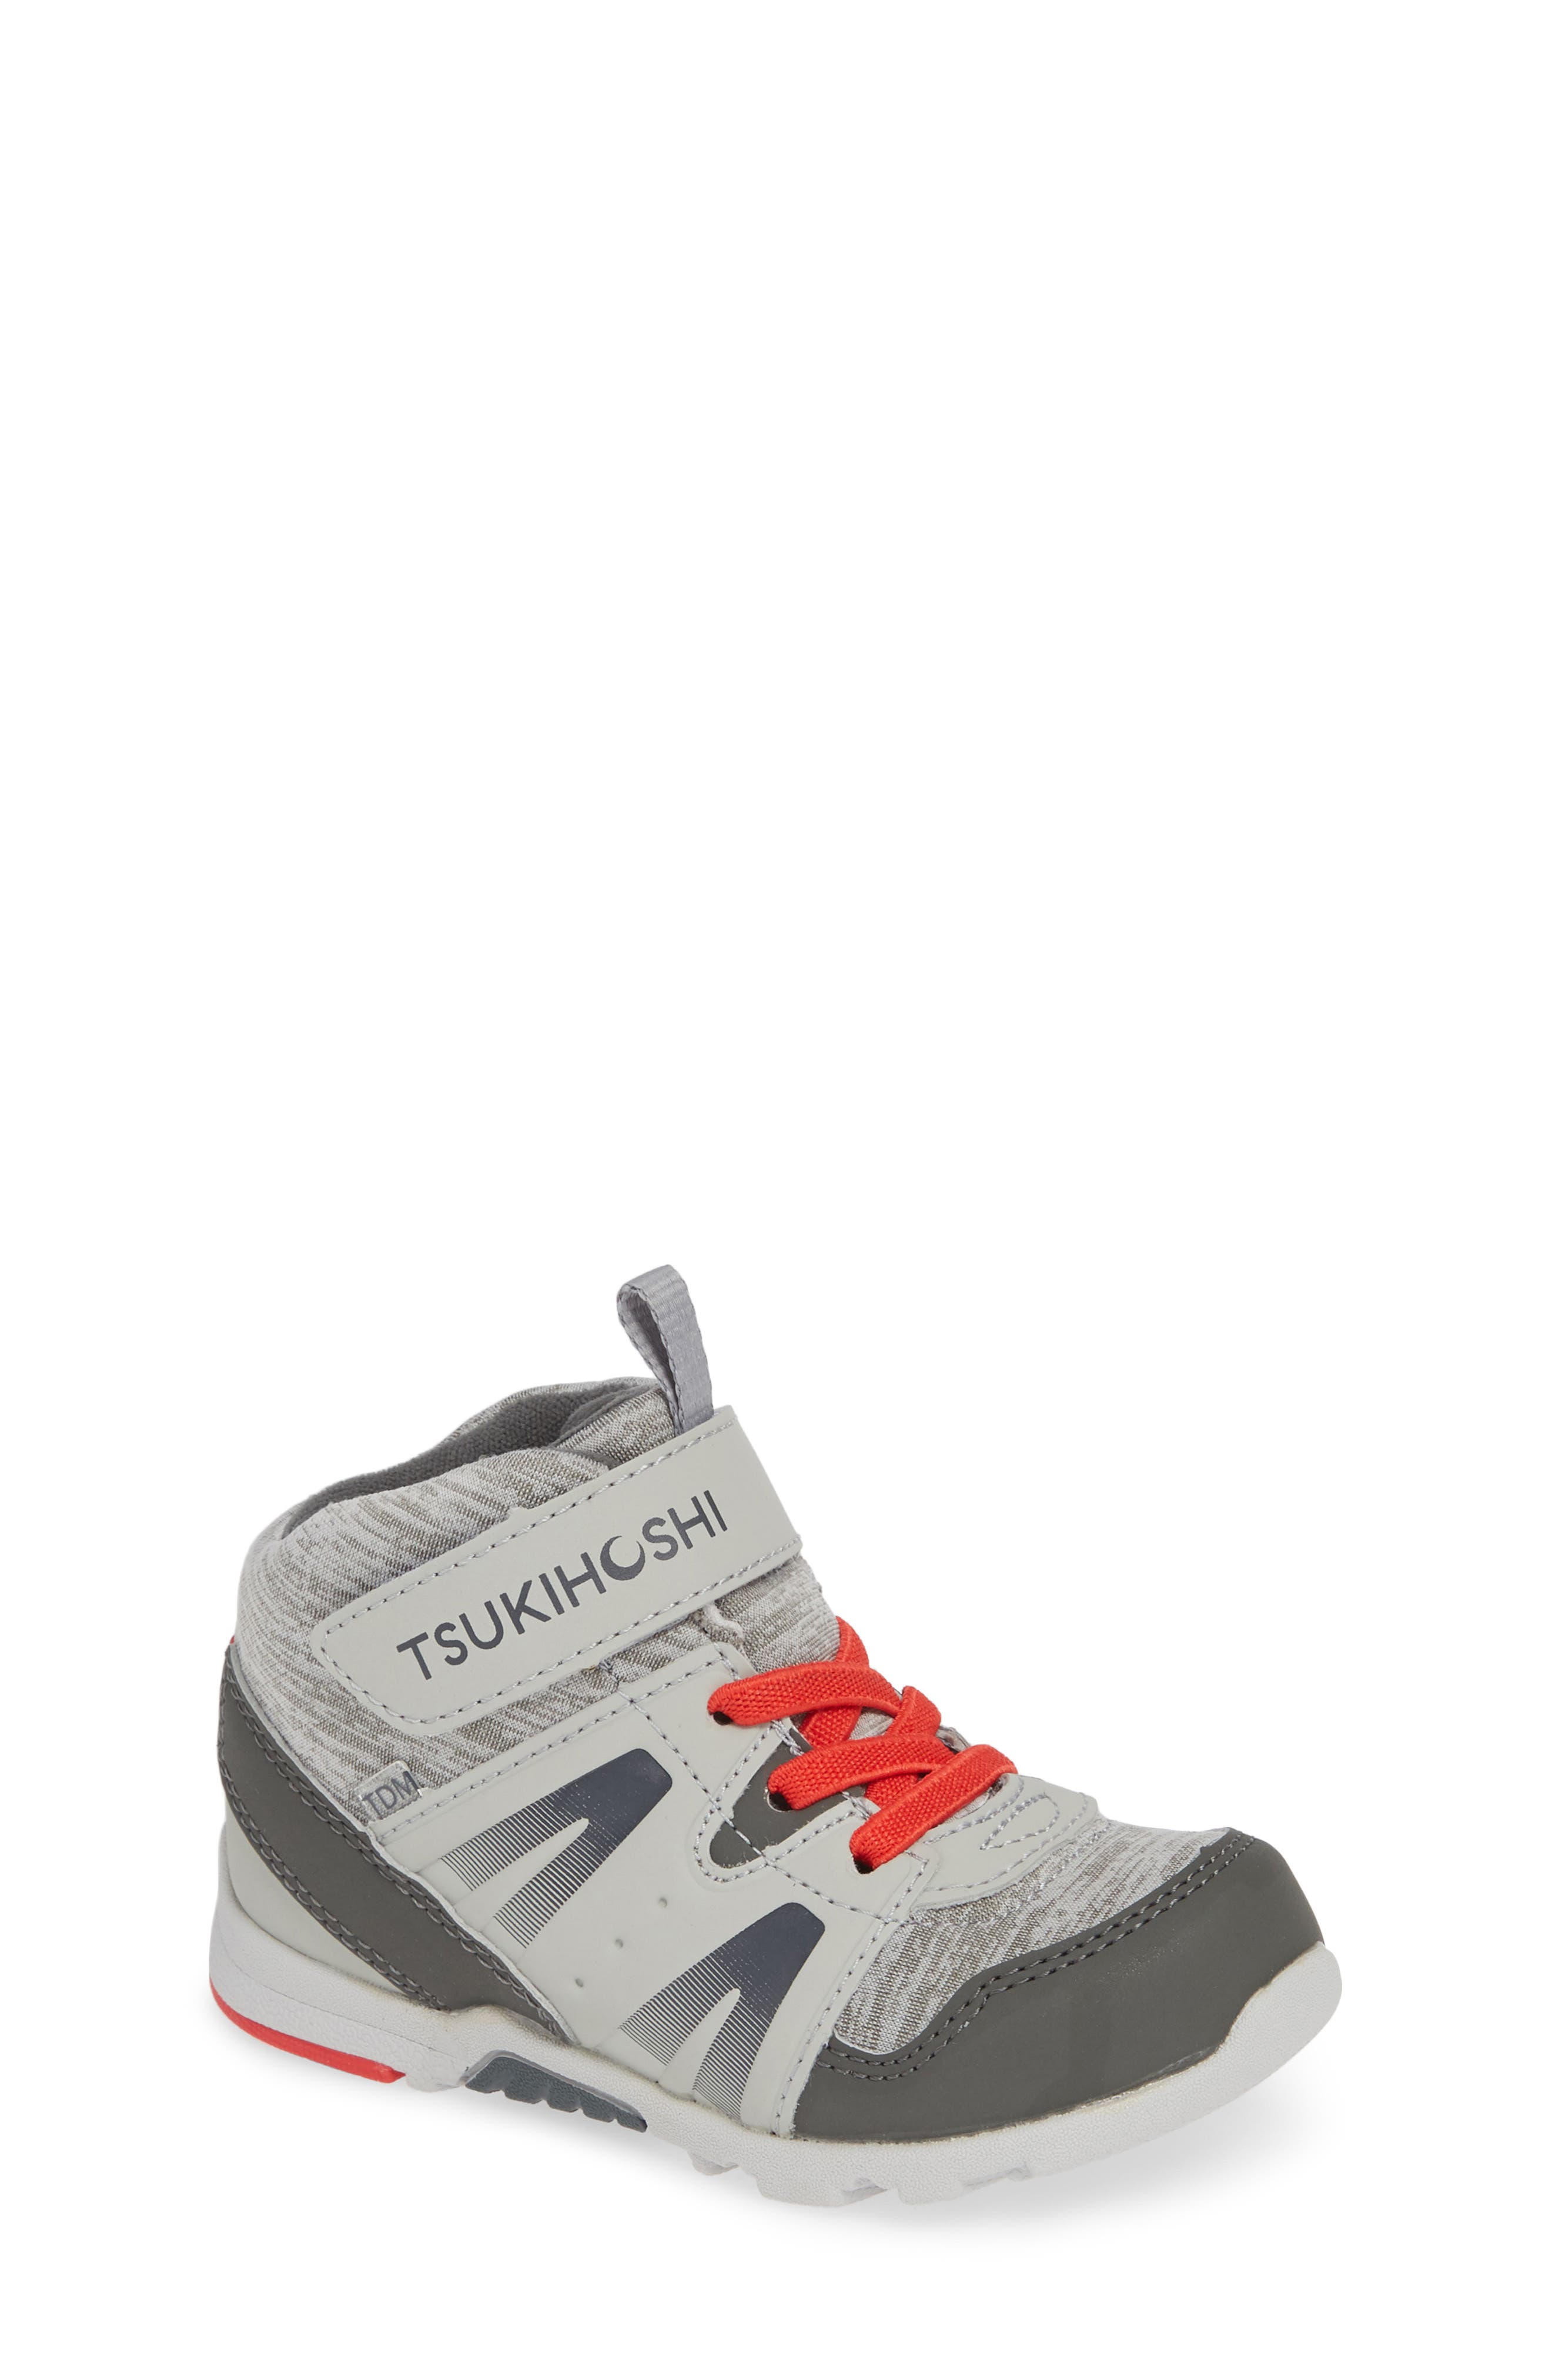 tsukihoshi shoes